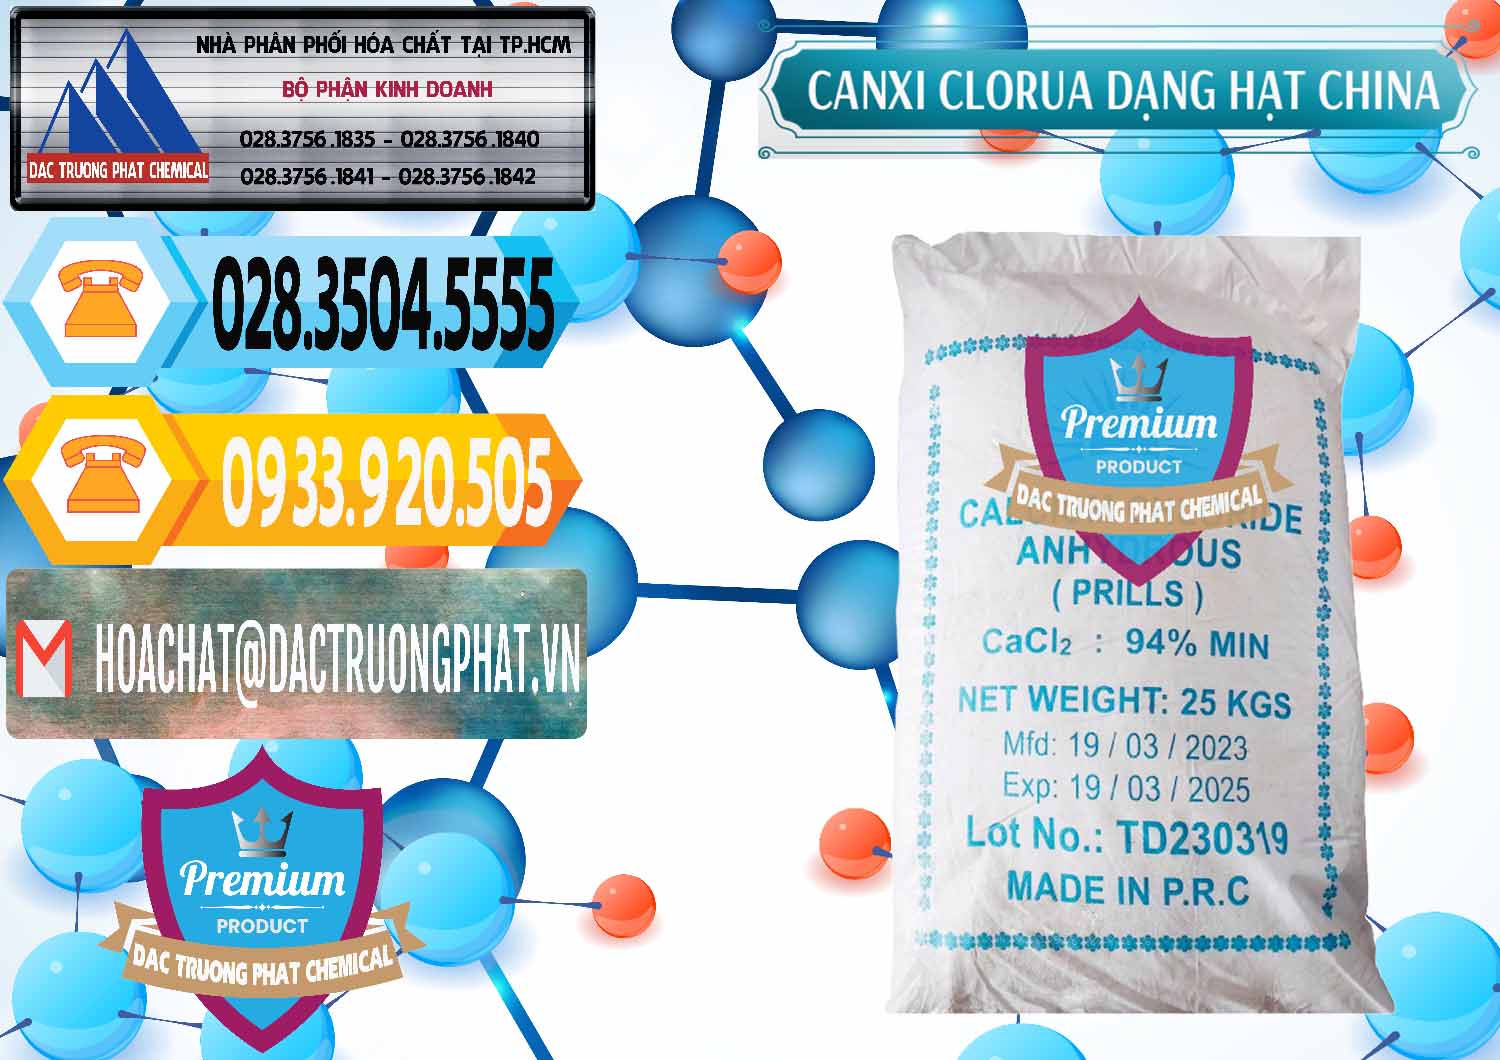 Đơn vị chuyên cung cấp & bán CaCl2 – Canxi Clorua 94% Dạng Hạt Trung Quốc China - 0373 - Công ty bán và phân phối hóa chất tại TP.HCM - hoachattayrua.net